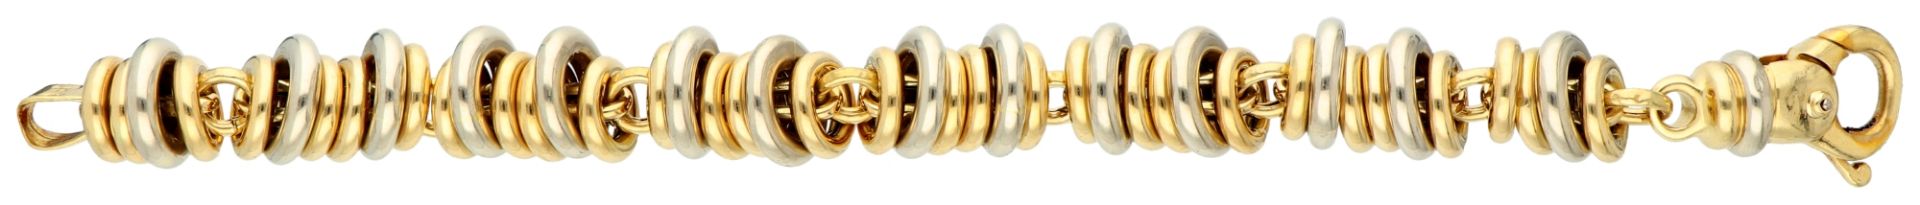 18K Bicolour gold link bracelet. - Image 2 of 4